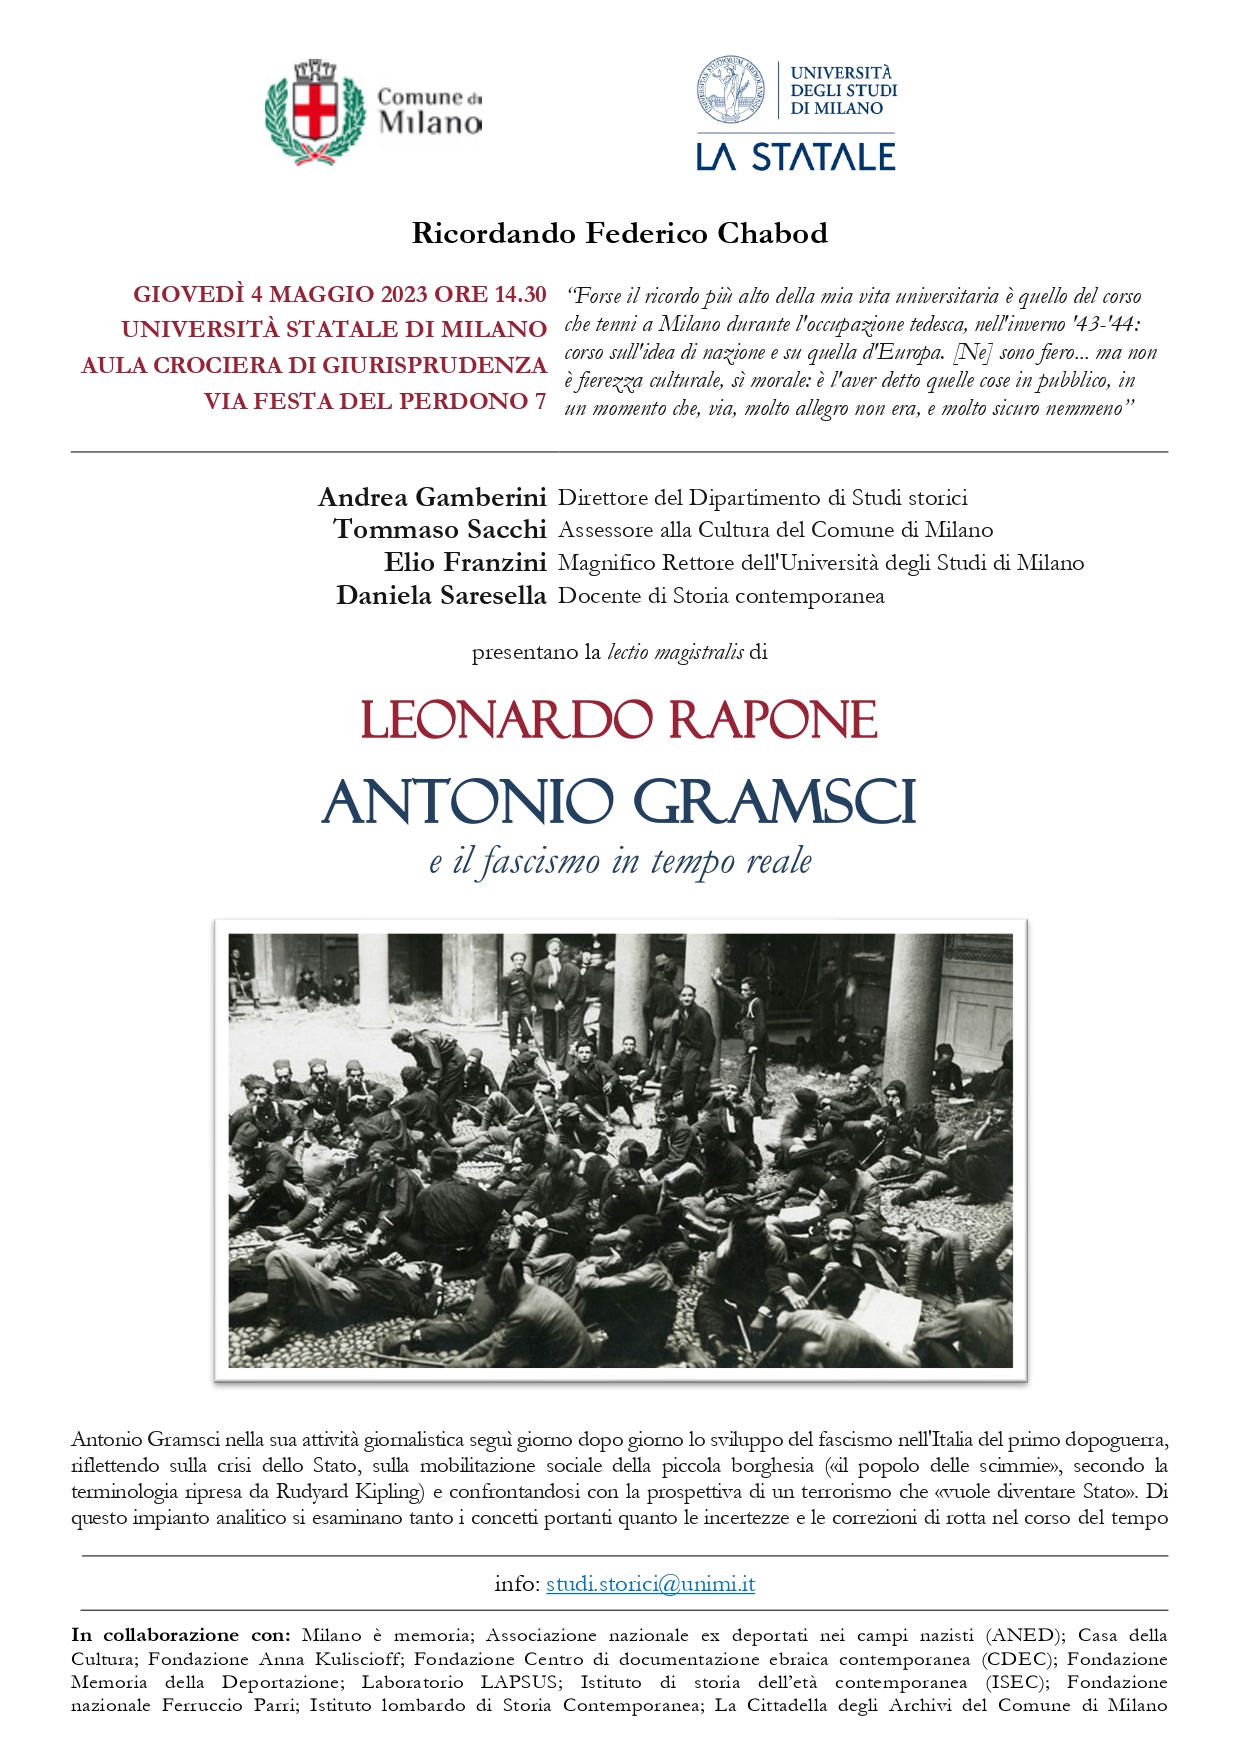 Lectio magistralis di Leonardo Rapone - "Antonio Gramsci e il fascismo in tempo reale"